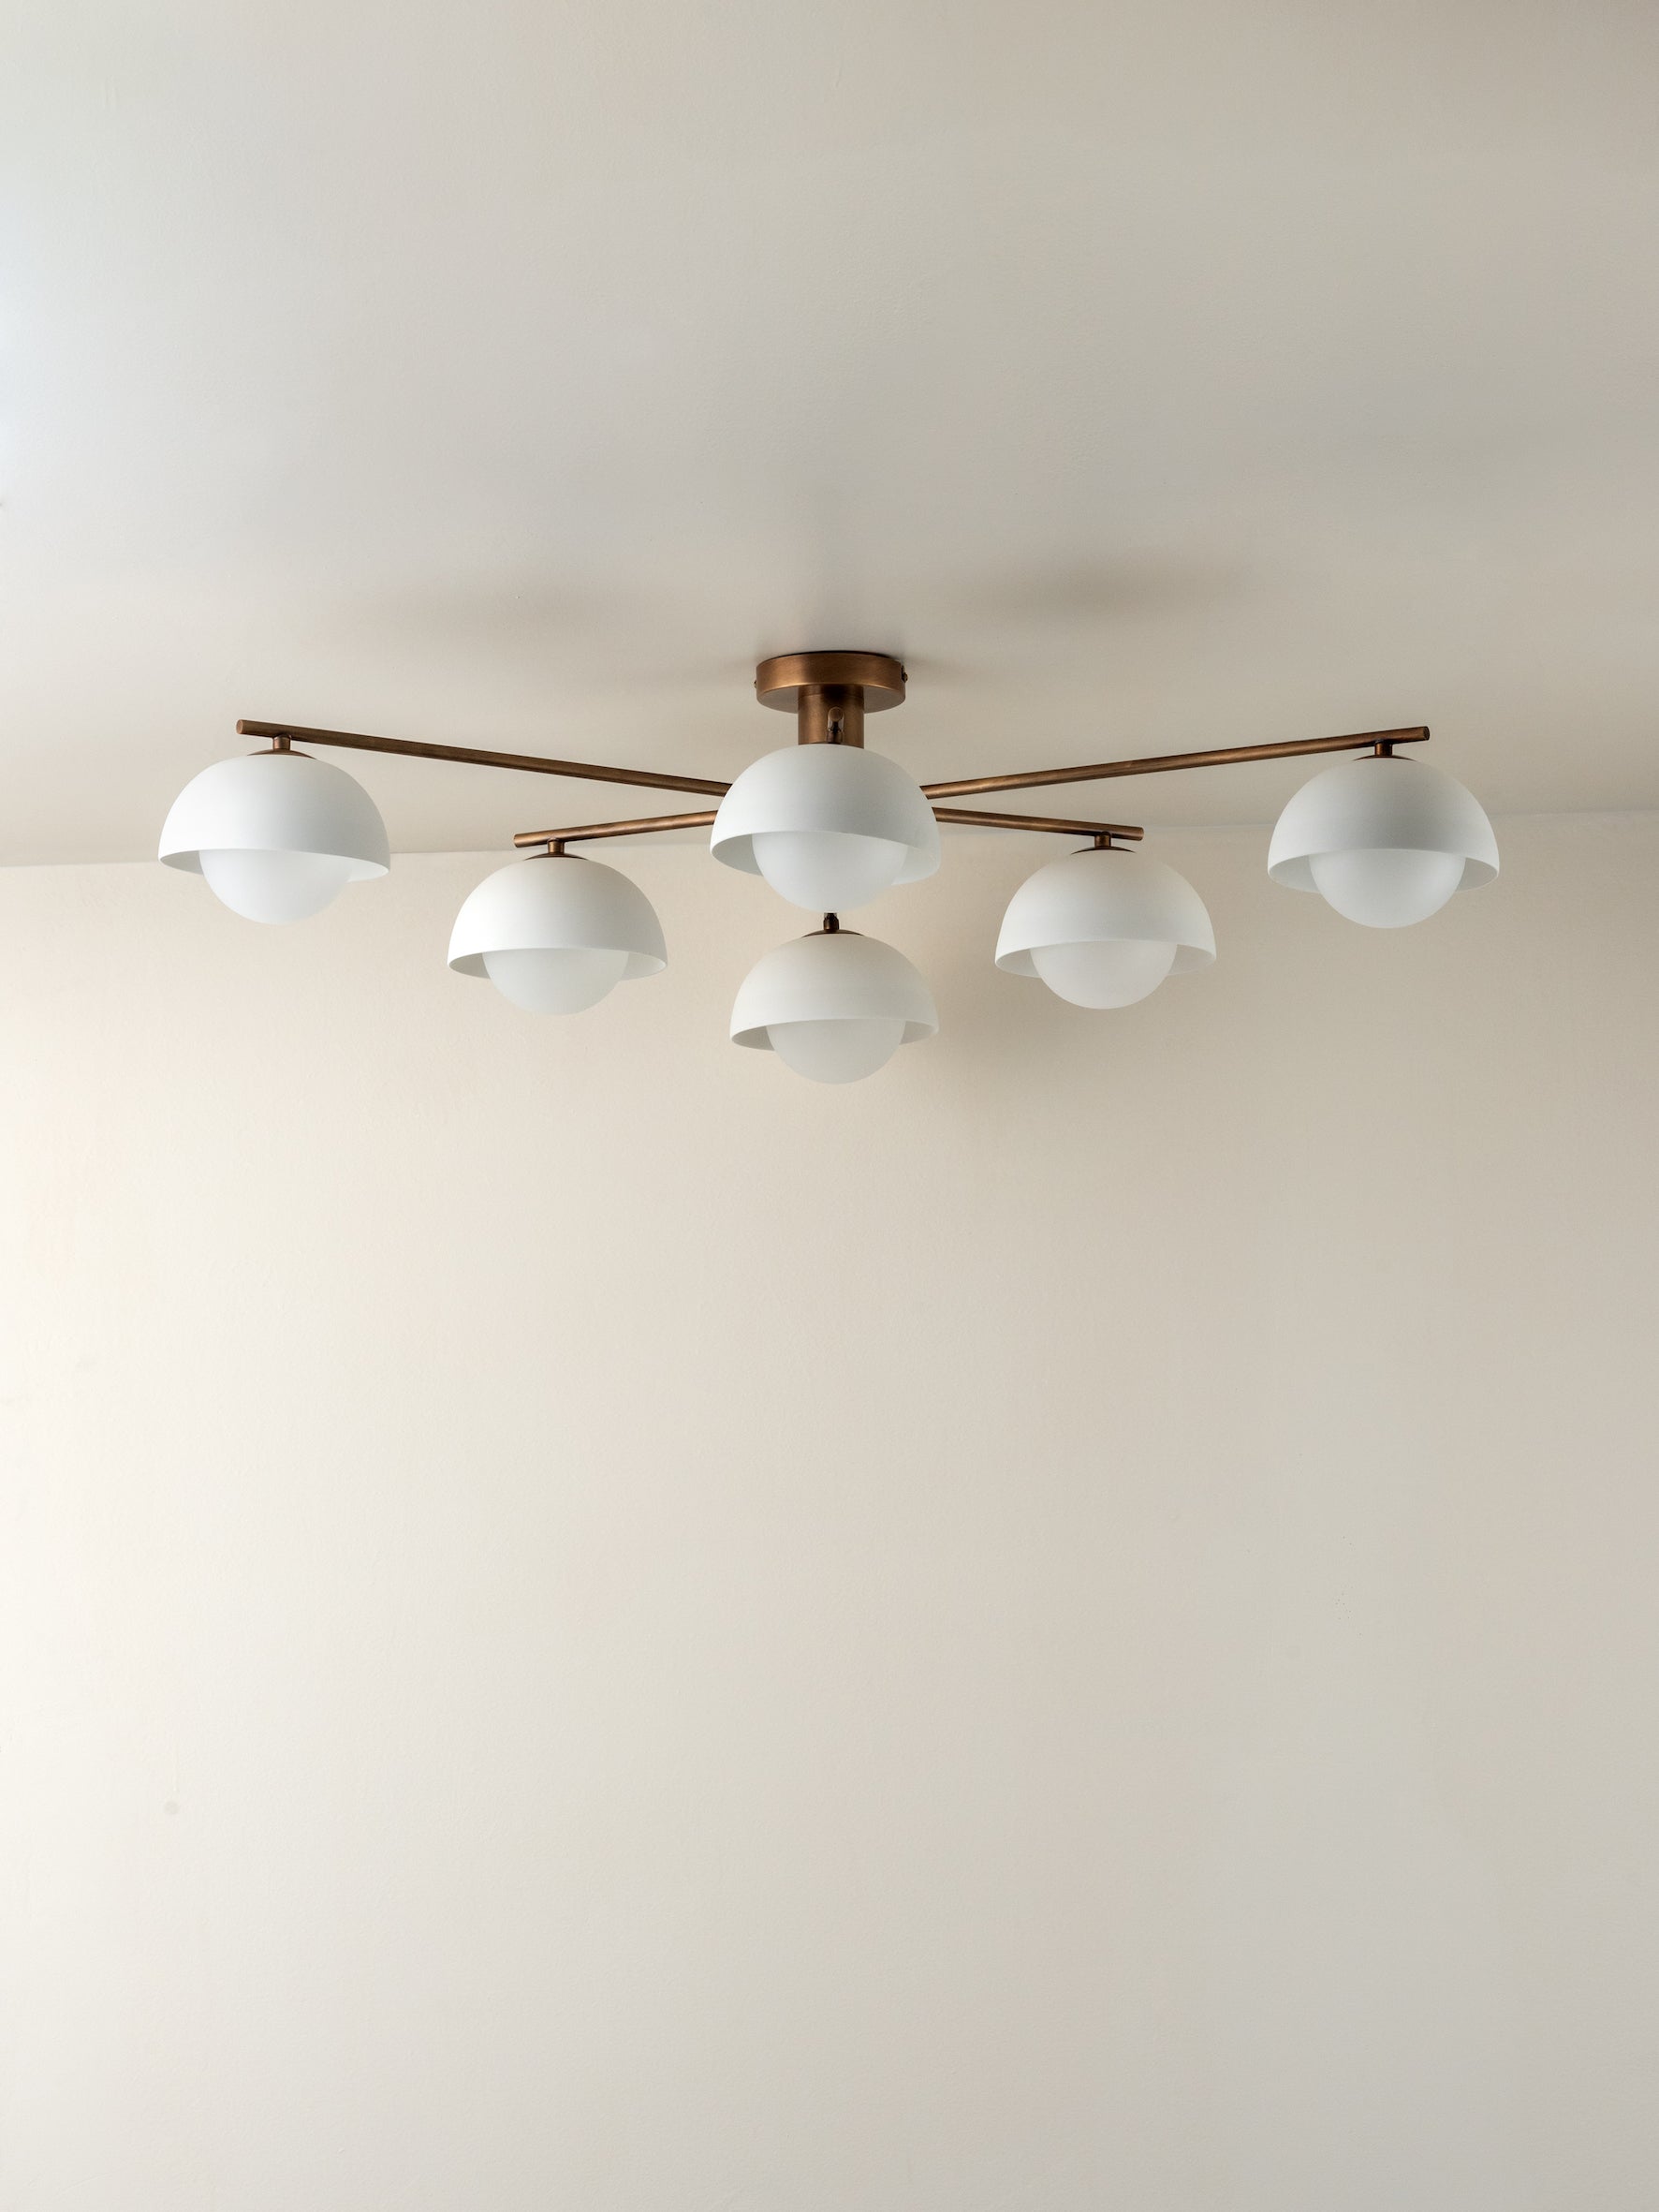 Porsa - 6 light aged brass and warm white porcelain flush | Ceiling Light | Lights & Lamps Inc | Modern Affordable Designer Lighting | USA